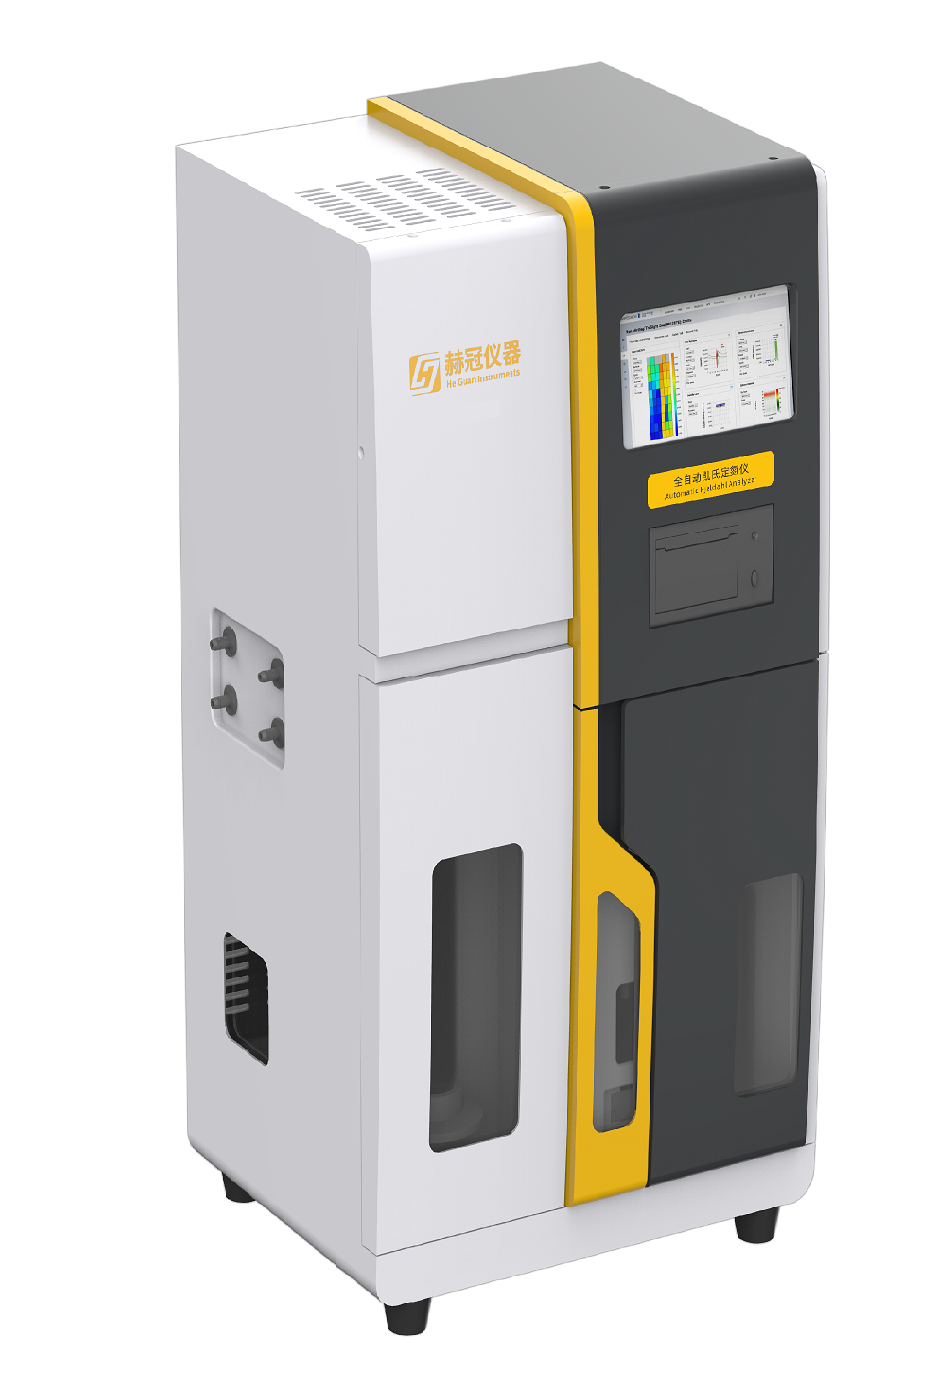 二氧化硫检测仪HGK-86全自动（食药）二氧化硫检测仪